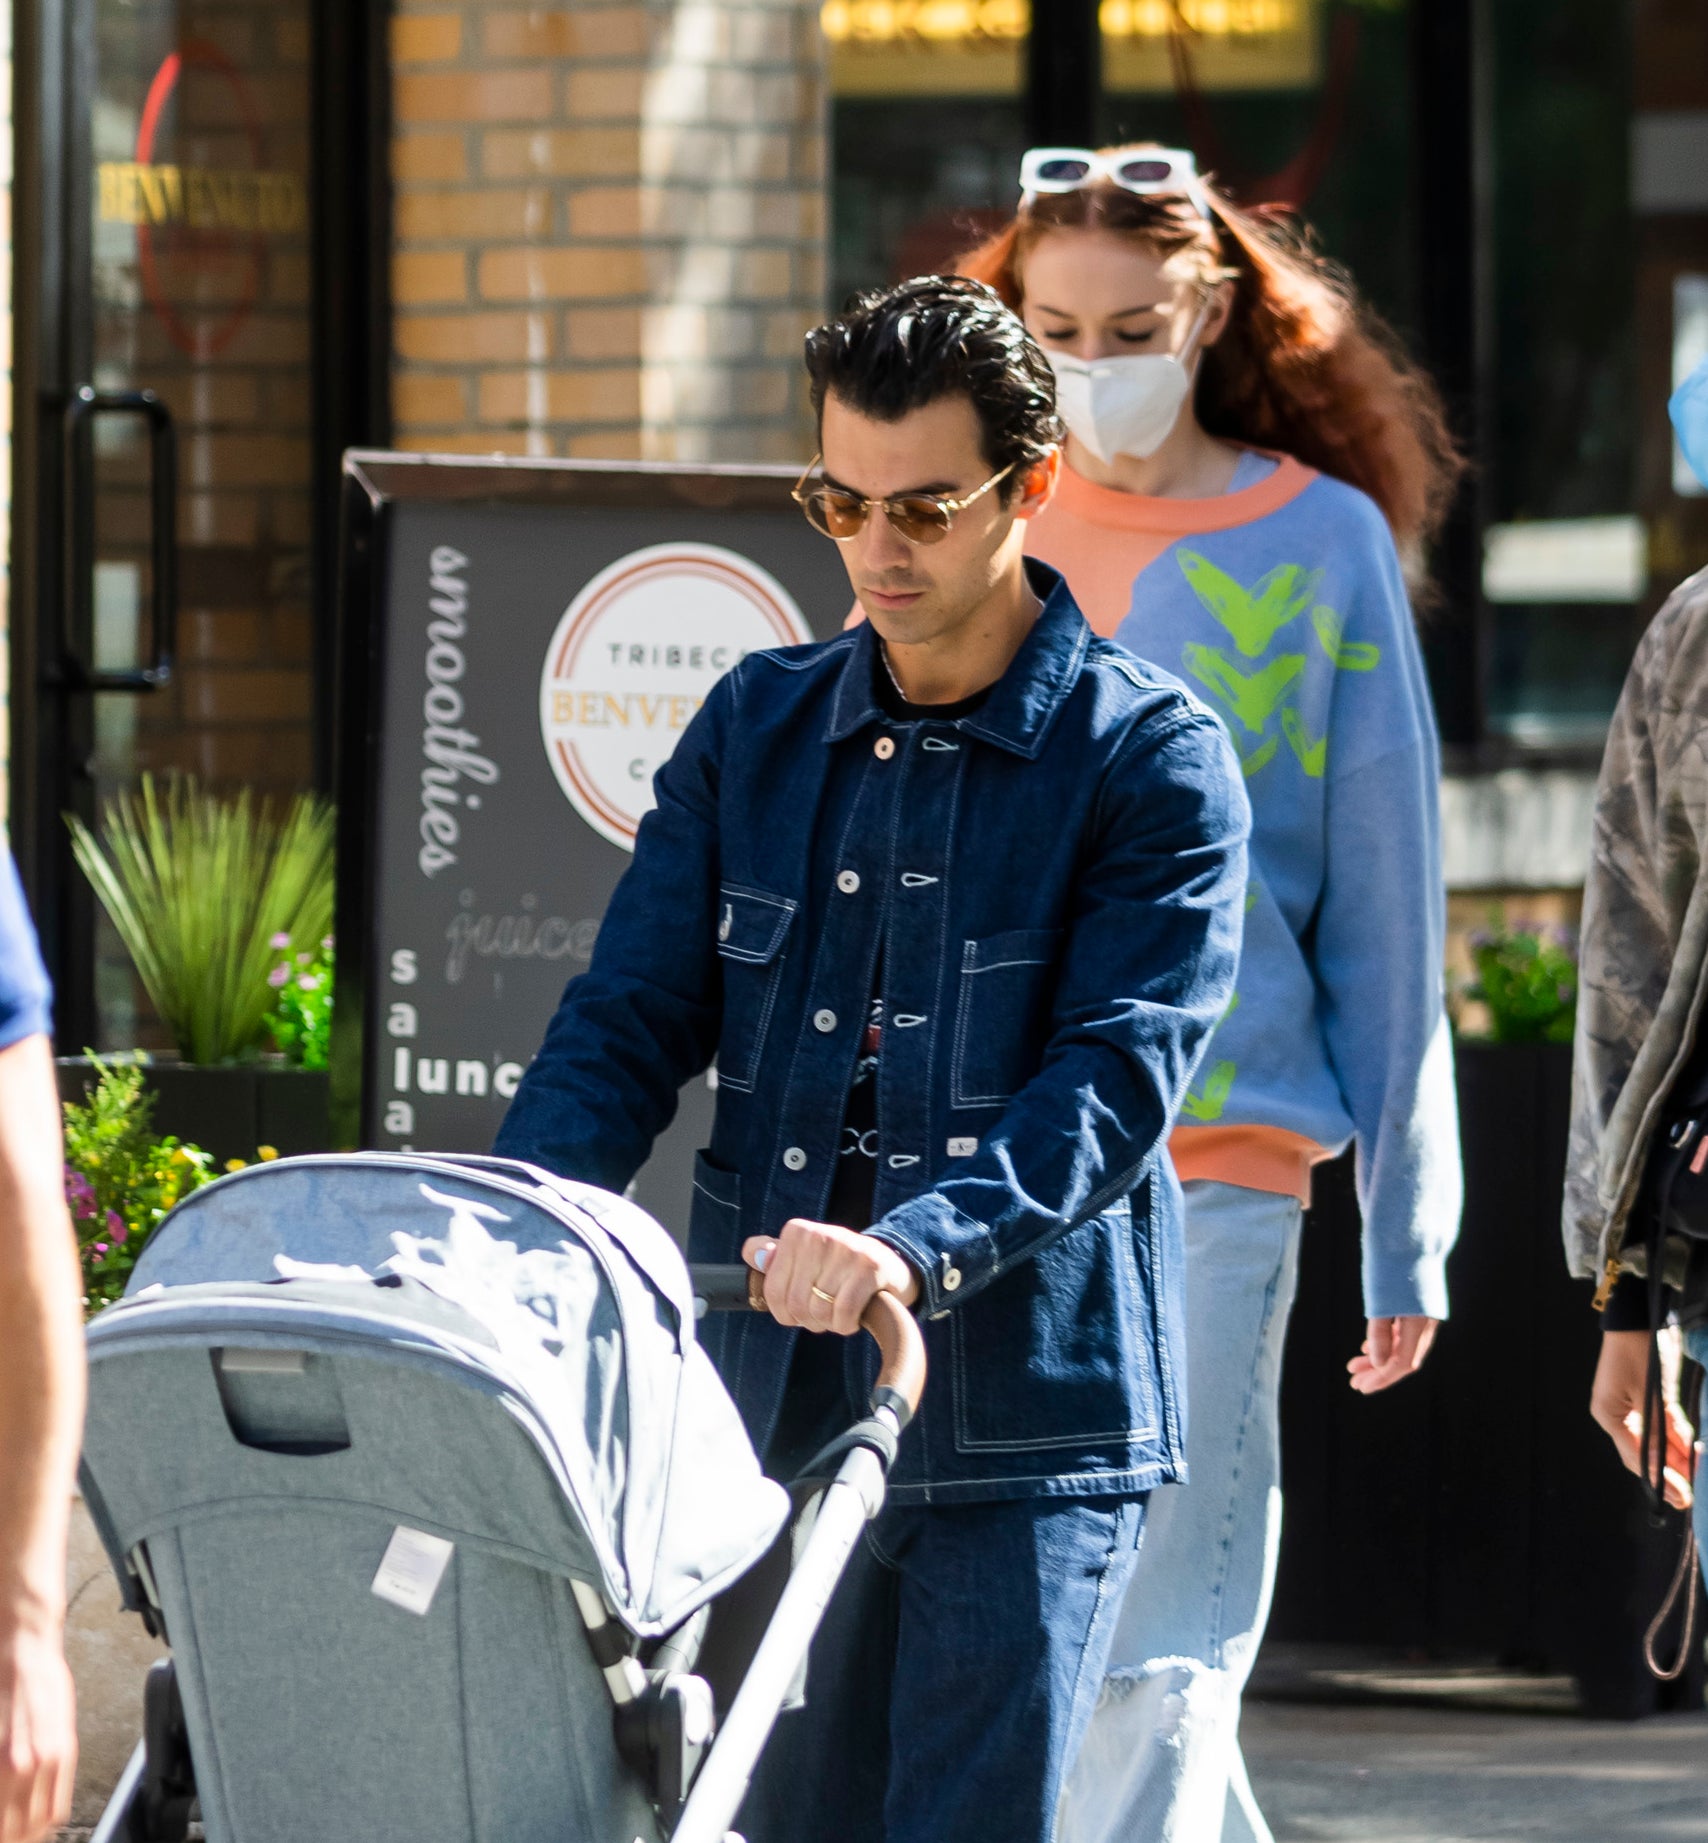 Joe Jonas pushing a baby stroller as Sophie Turner walks behind him